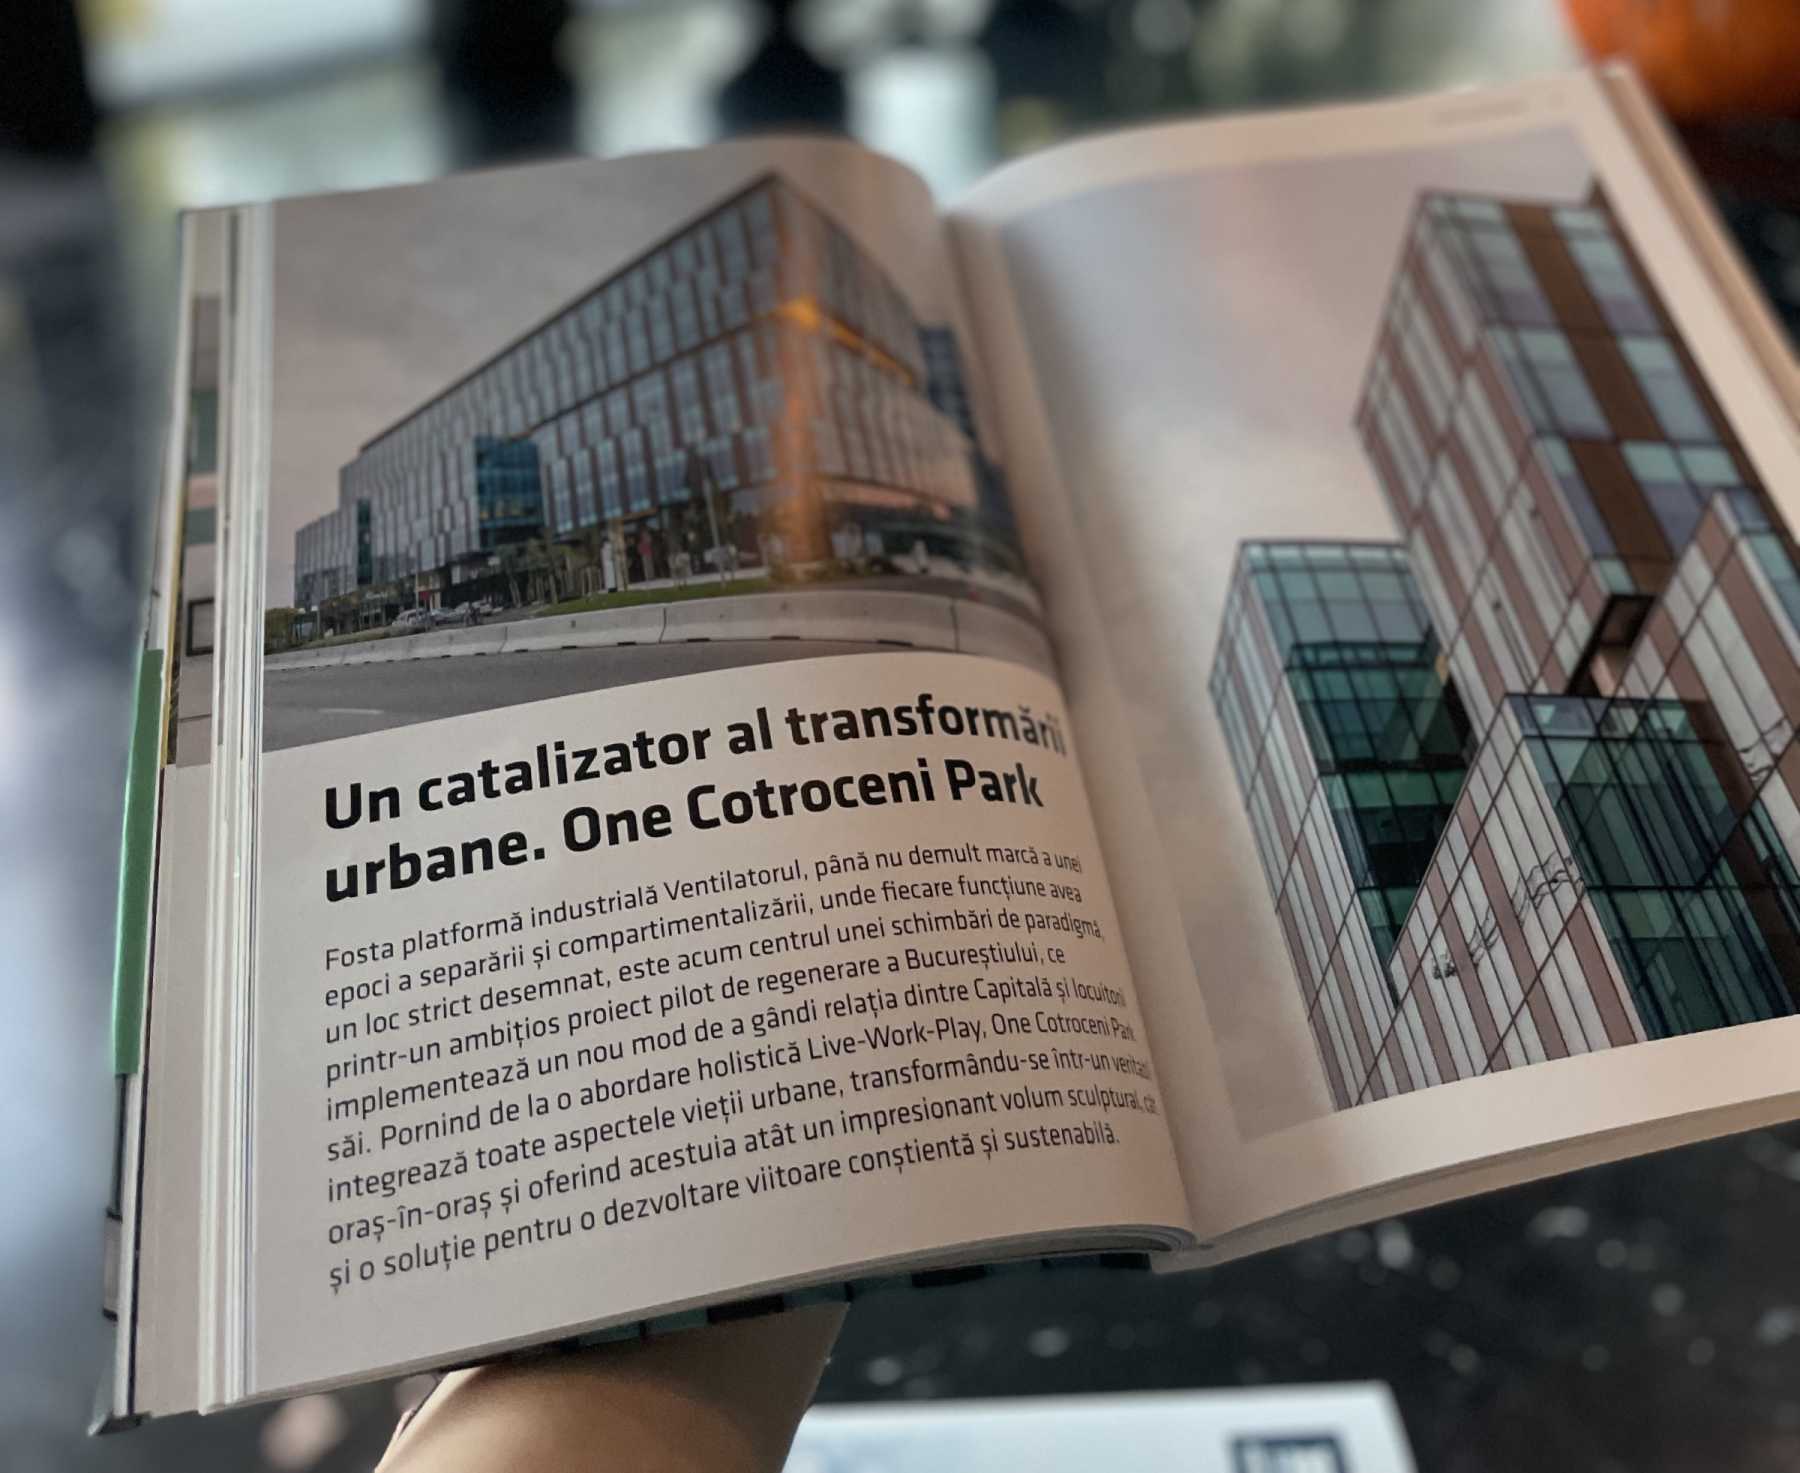 One Cotroceni Park, în cel mai recent număr Igloo: „Un catalizator al transformării urbane”